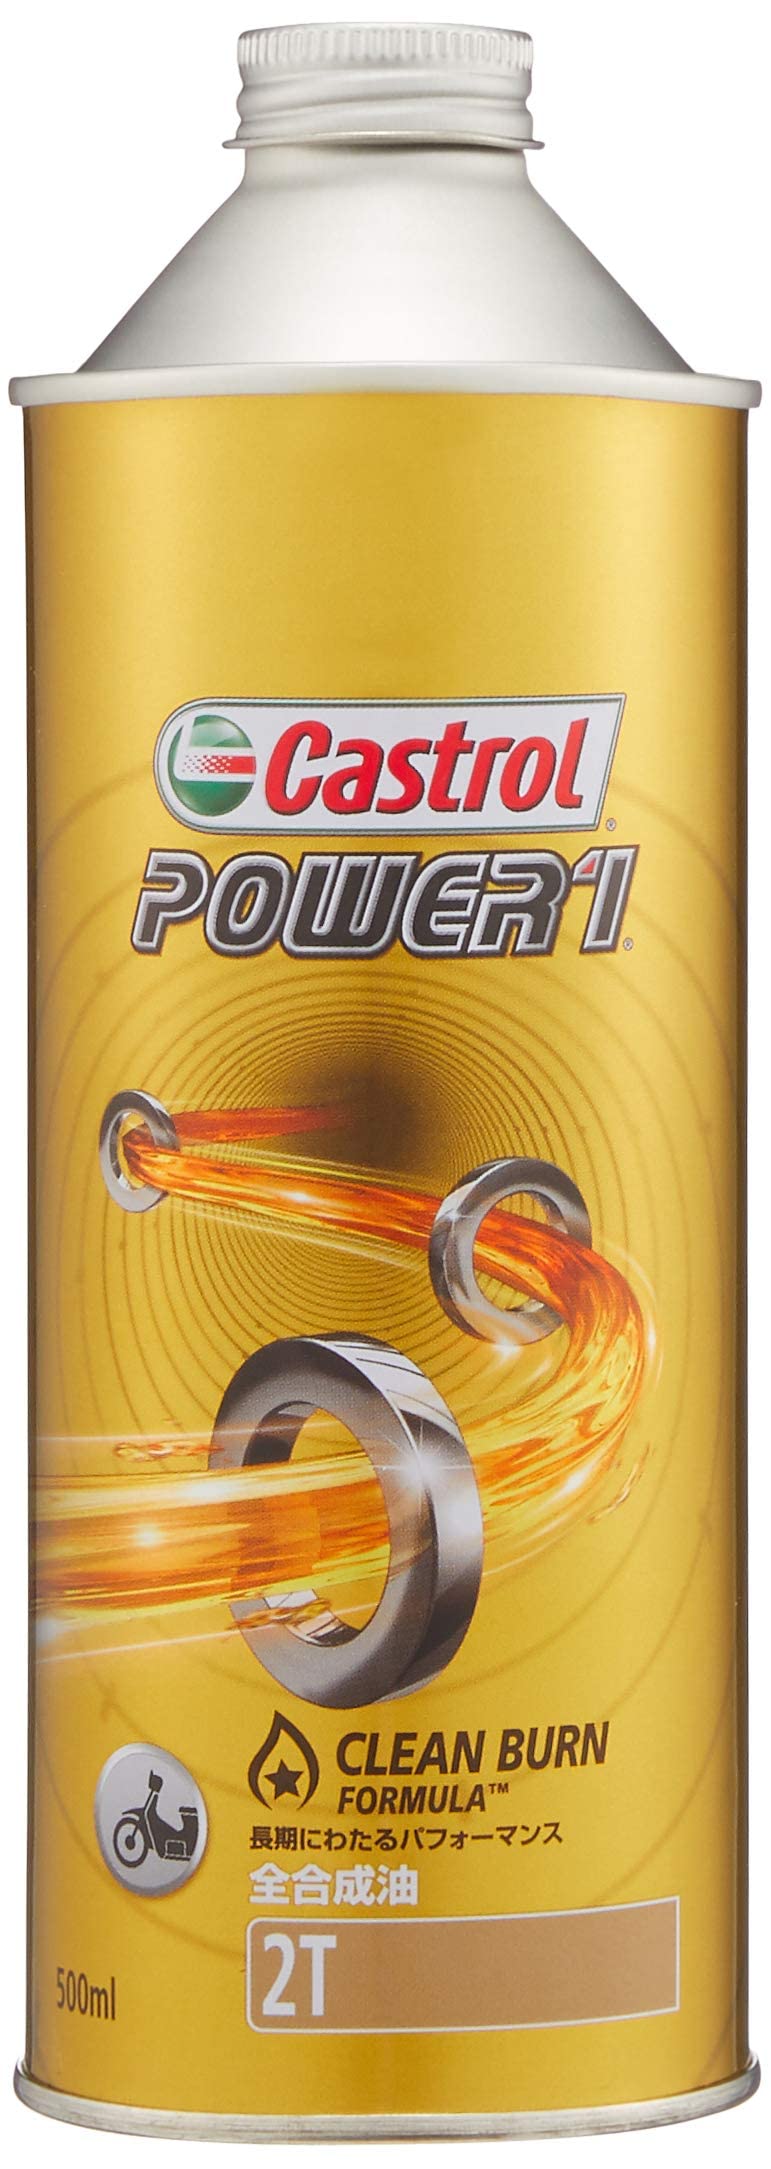 カストロール(Castrol) エンジンオイル POWER1 2T 500ml 二輪車2サイクルエンジン用全合成油 FD Castrol